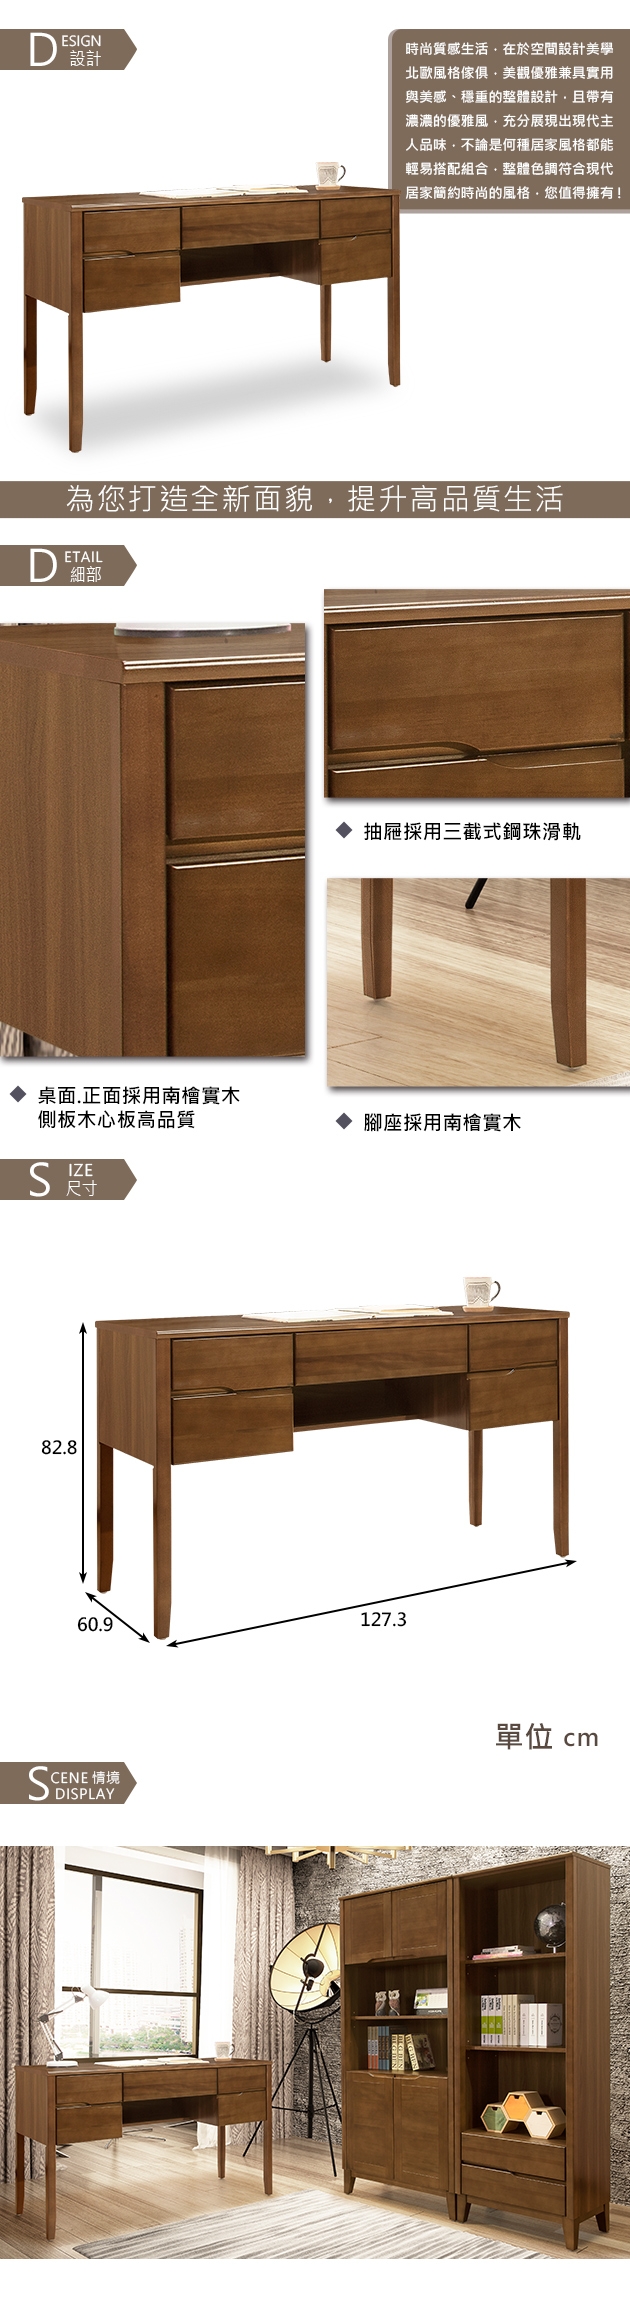 時尚屋米亞淺胡桃4.2尺書桌 寬127.3x深60.9x高82.8cm